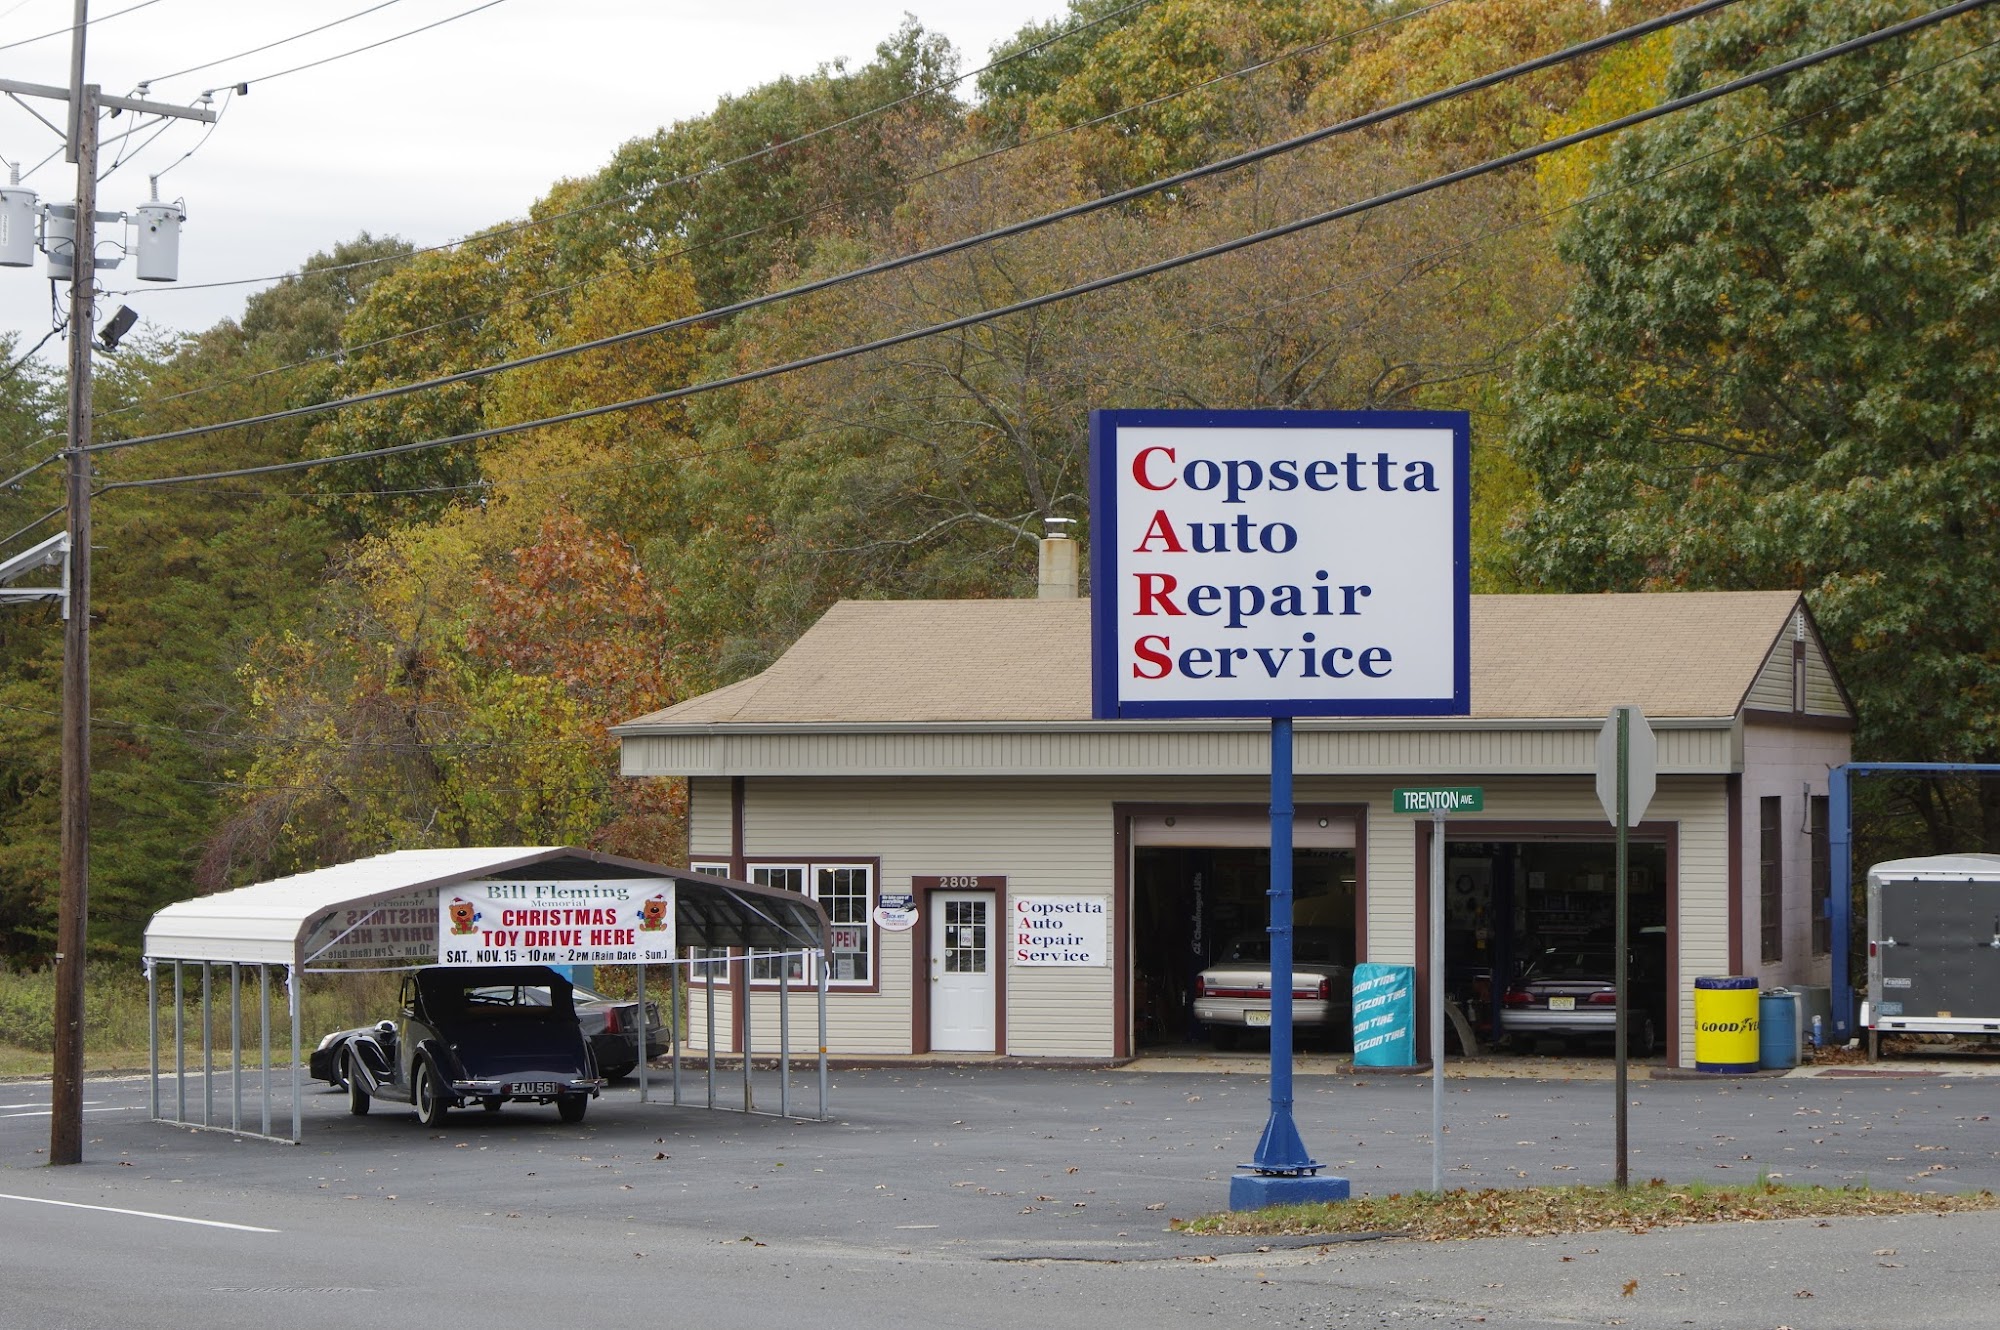 Copsetta Auto Repair Service